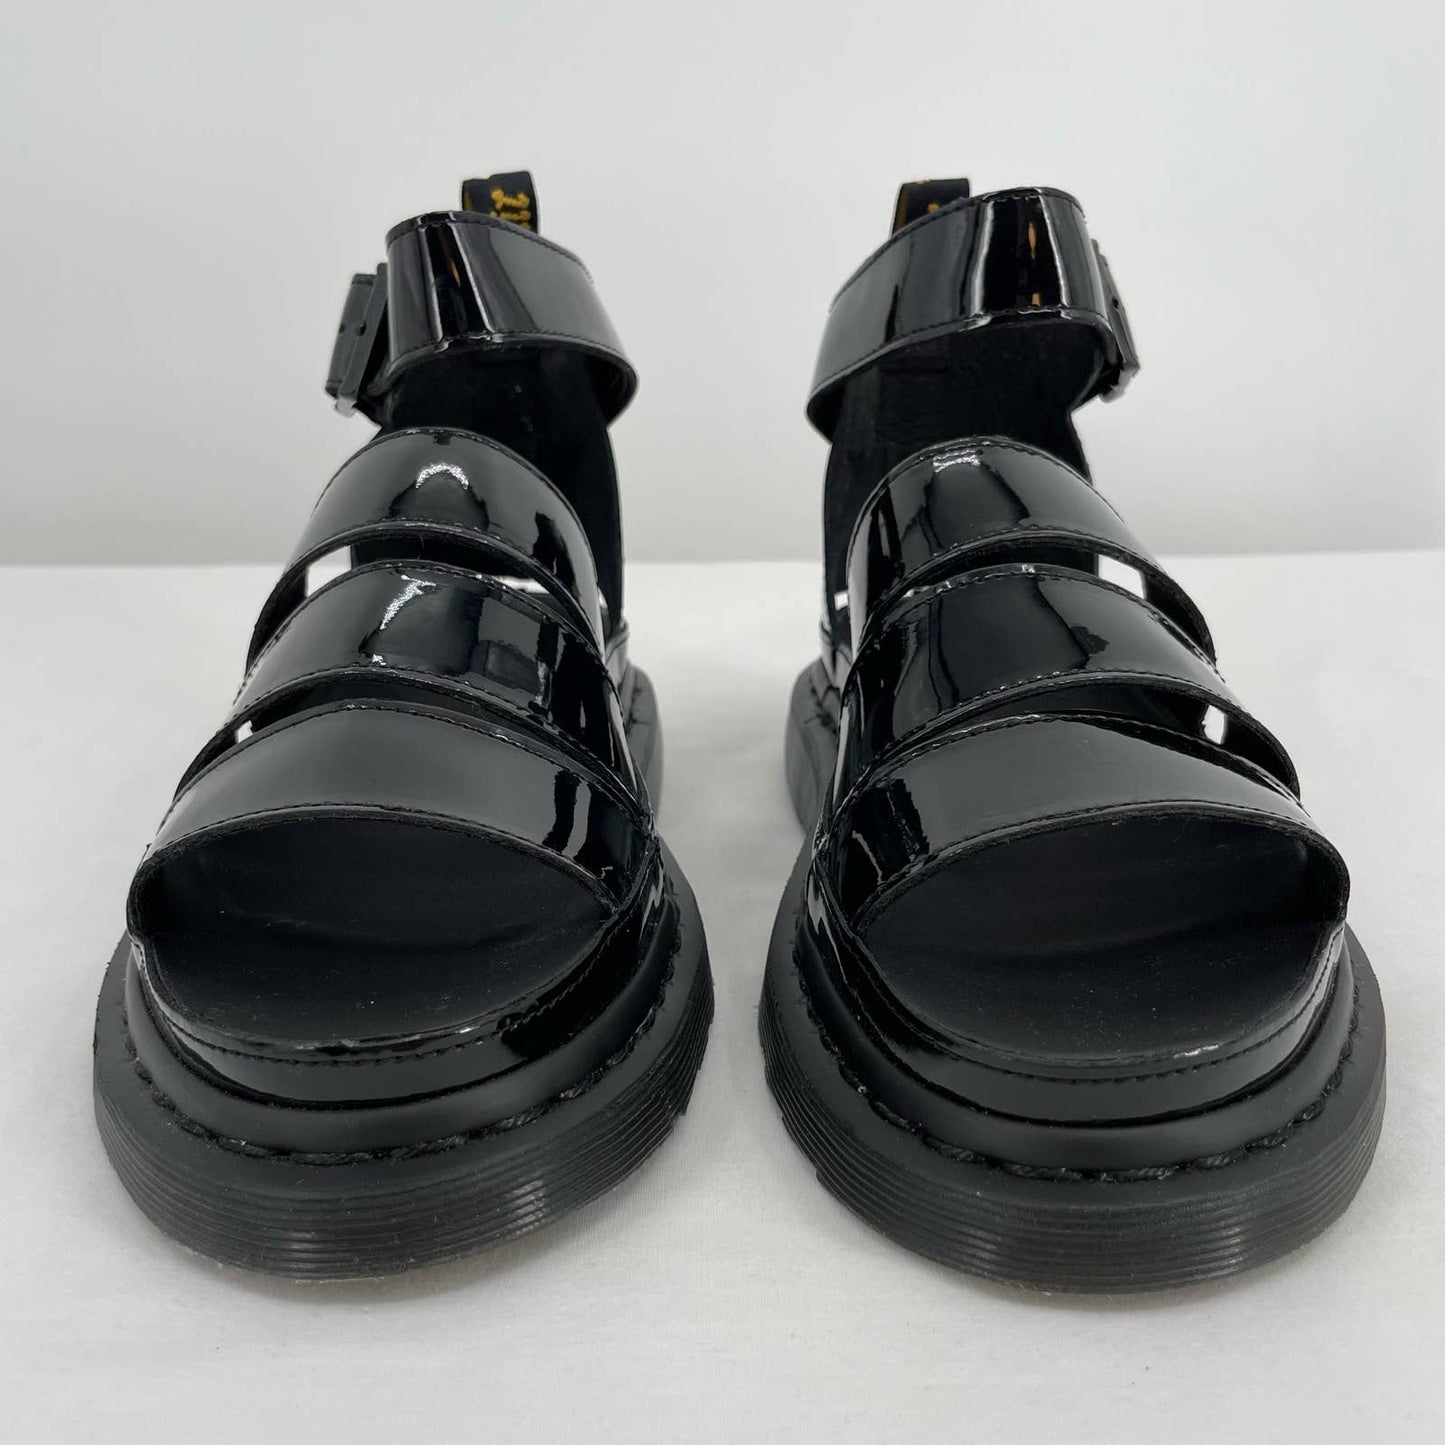 Dr. Martens Clarissa II Black Patent Leather Sandals Goth Grunge Summer Size 9